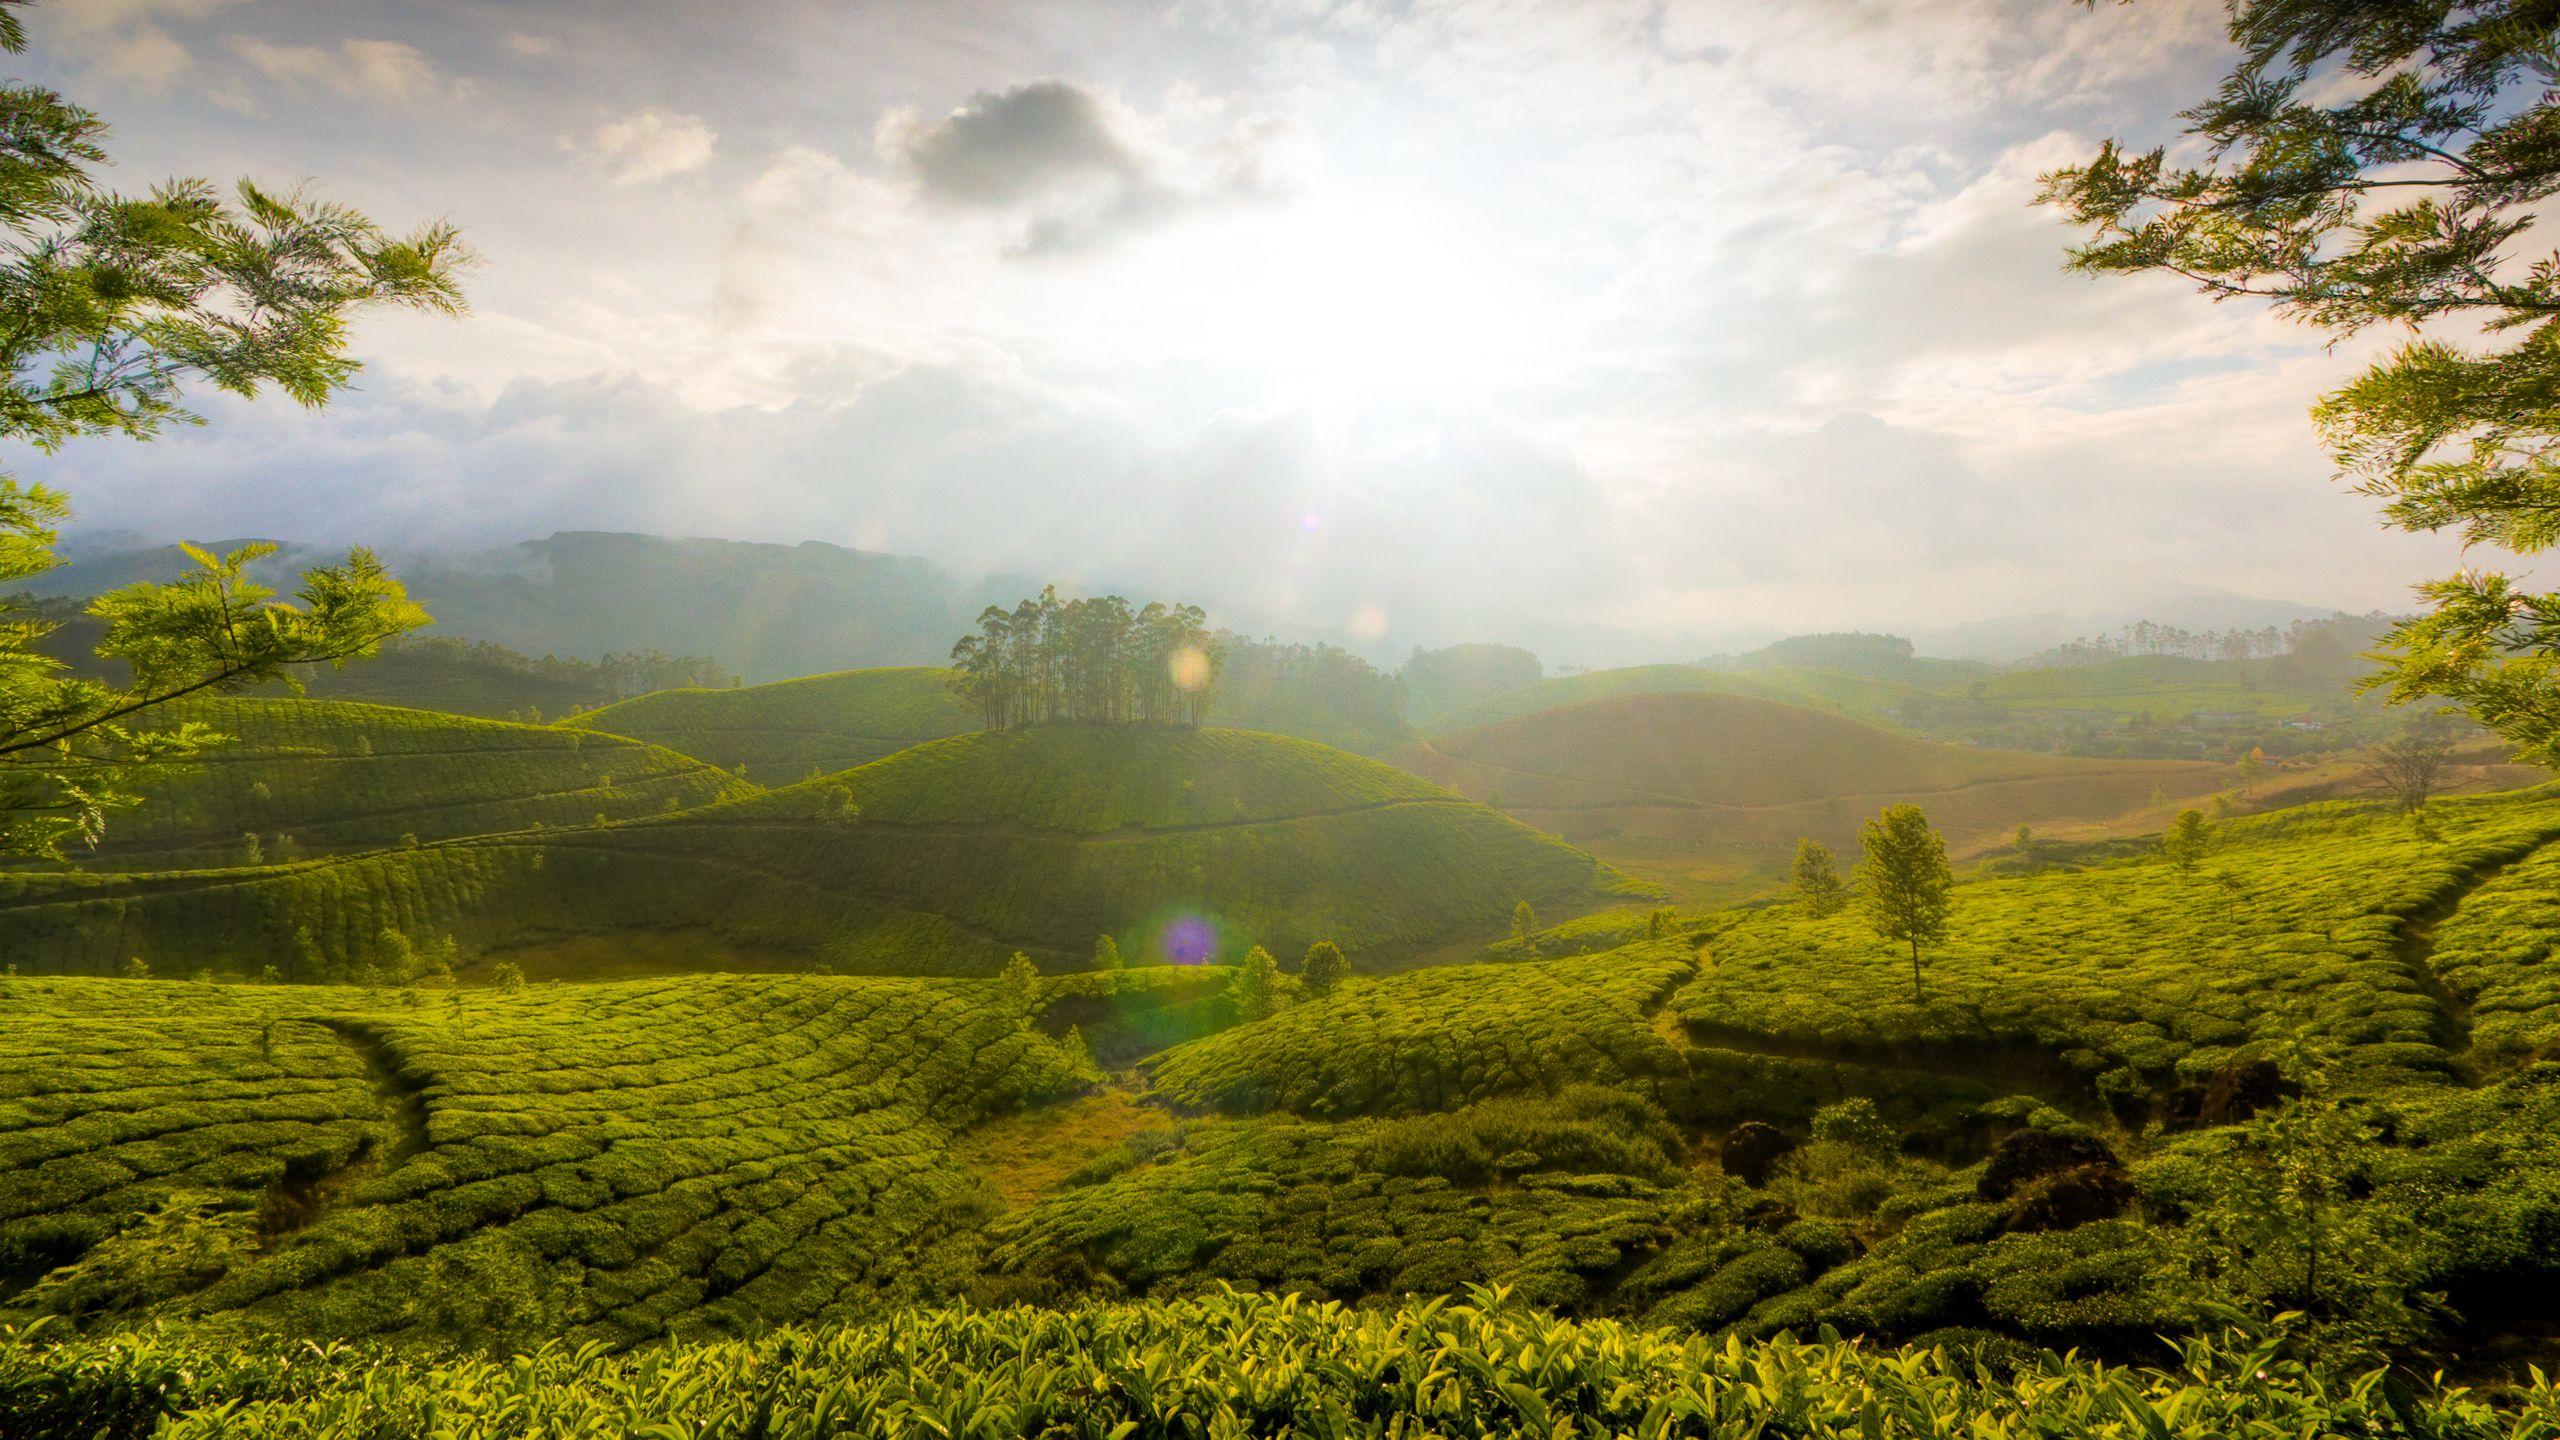 Tea Landscape Wallpapers - Top Free Tea Landscape Backgrounds